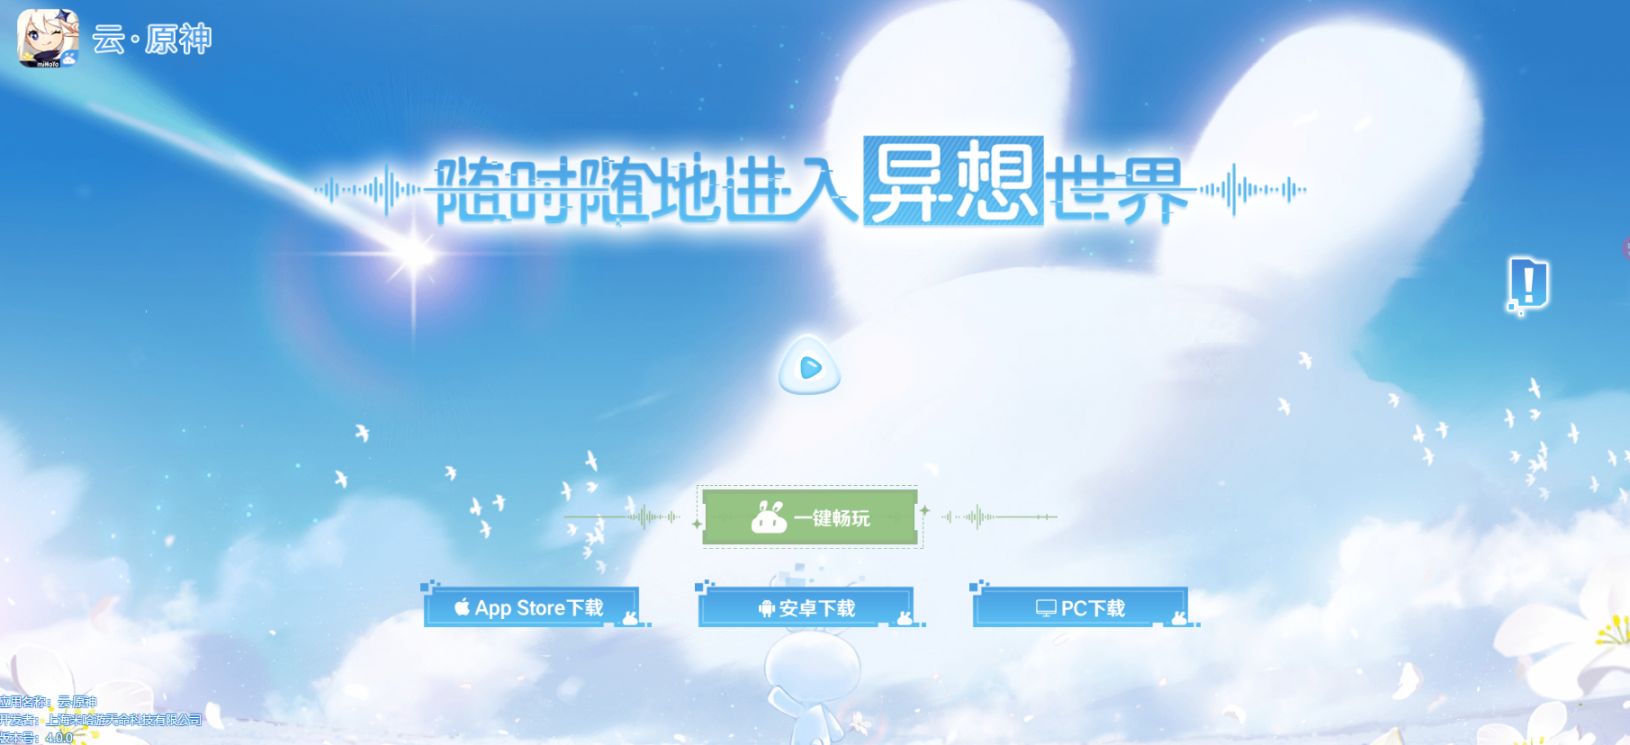 米哈遊推出網頁版《雲·原神》 無需下載包體即可遊玩